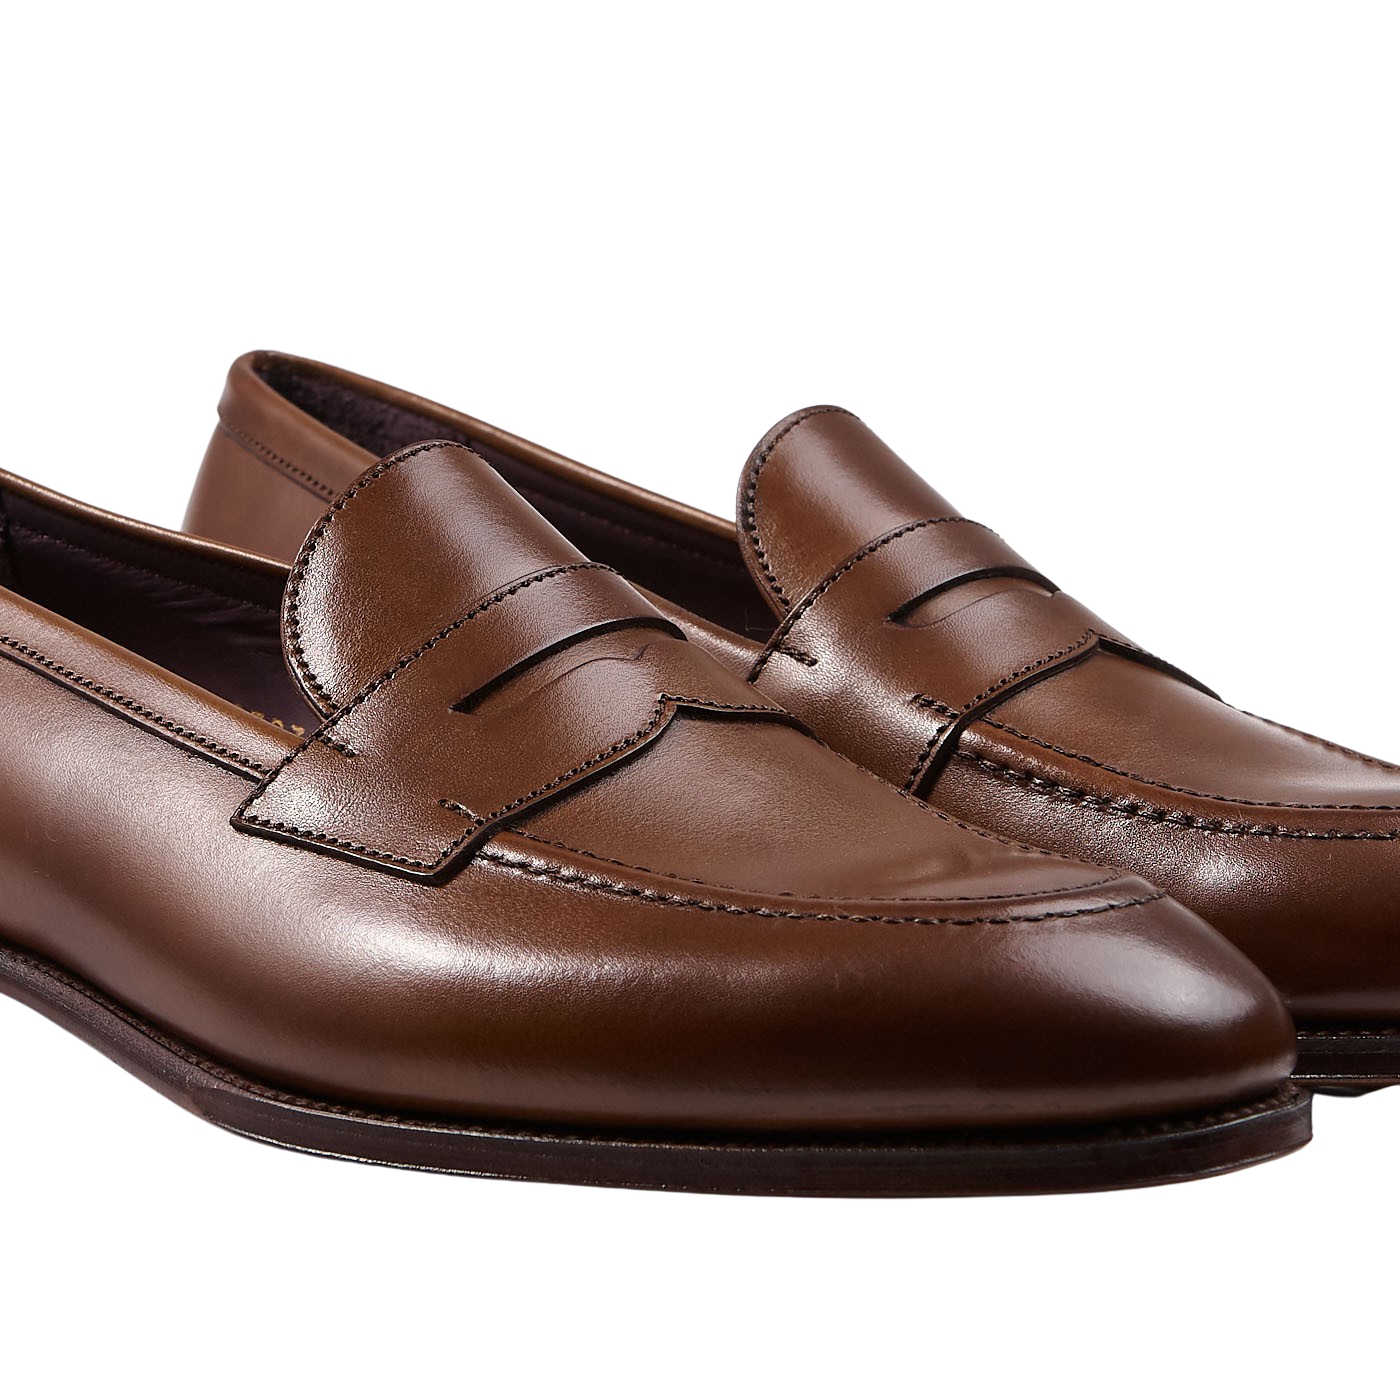 Carmina Shoes | Shop online at Baltzar - Fine Shoes for Men